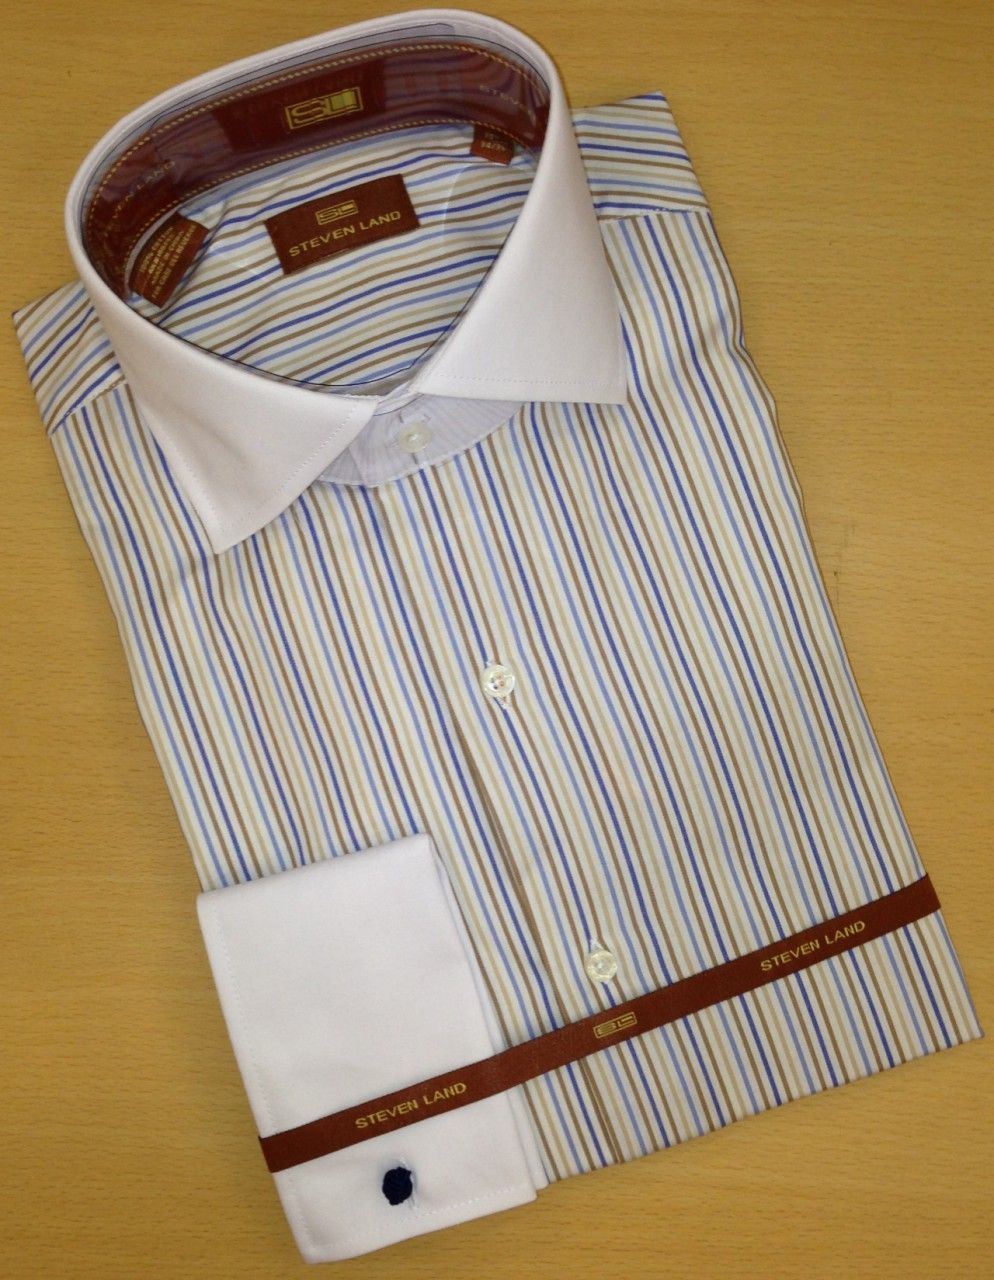 Men's Steven Land Sharp Striped Spread Collar Dress Shirt - White